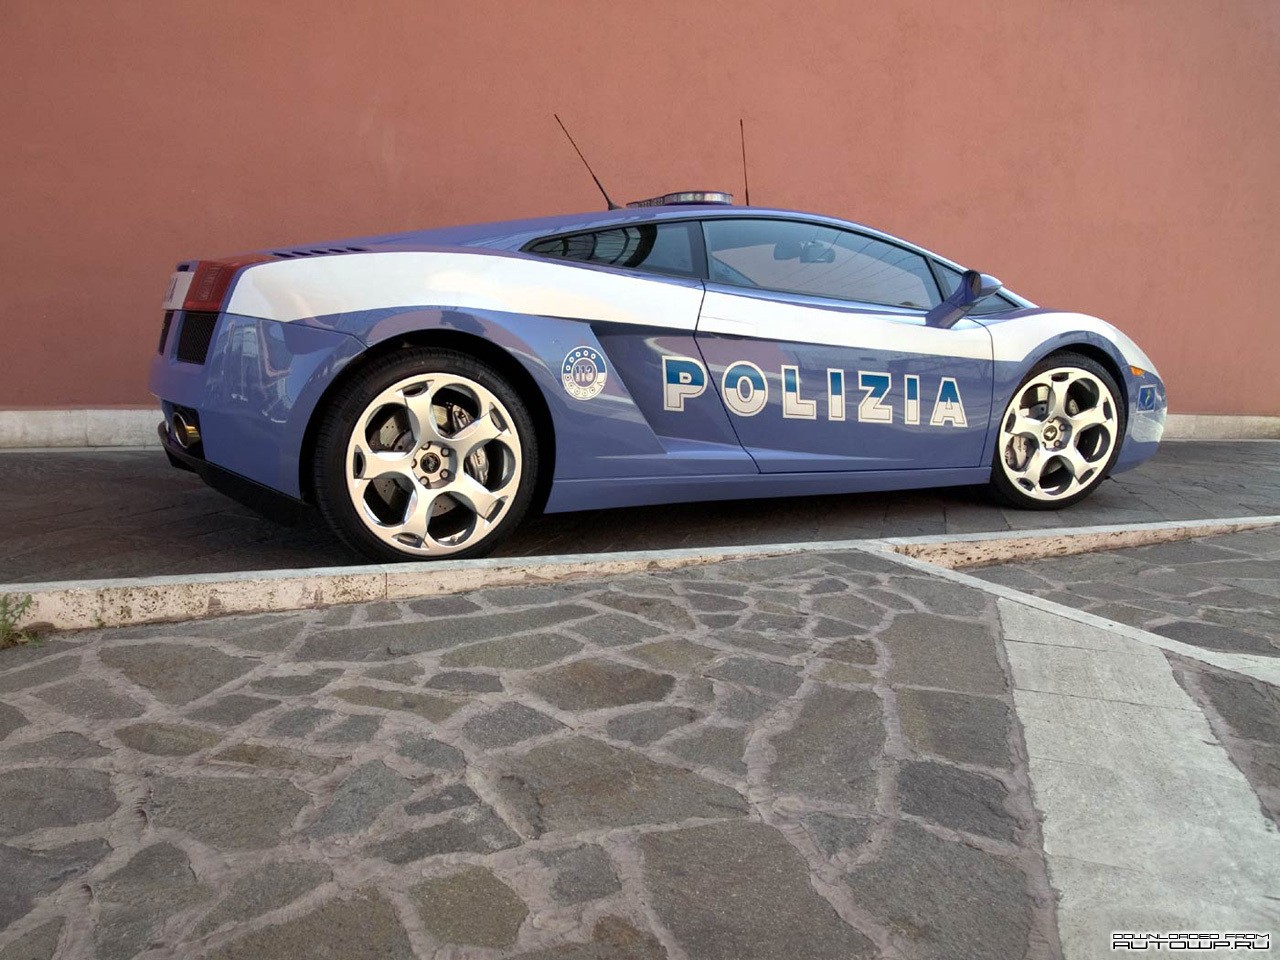 General 1280x960 car Lamborghini Gallardo Lamborghini vehicle police cars blue cars italian cars Volkswagen Group